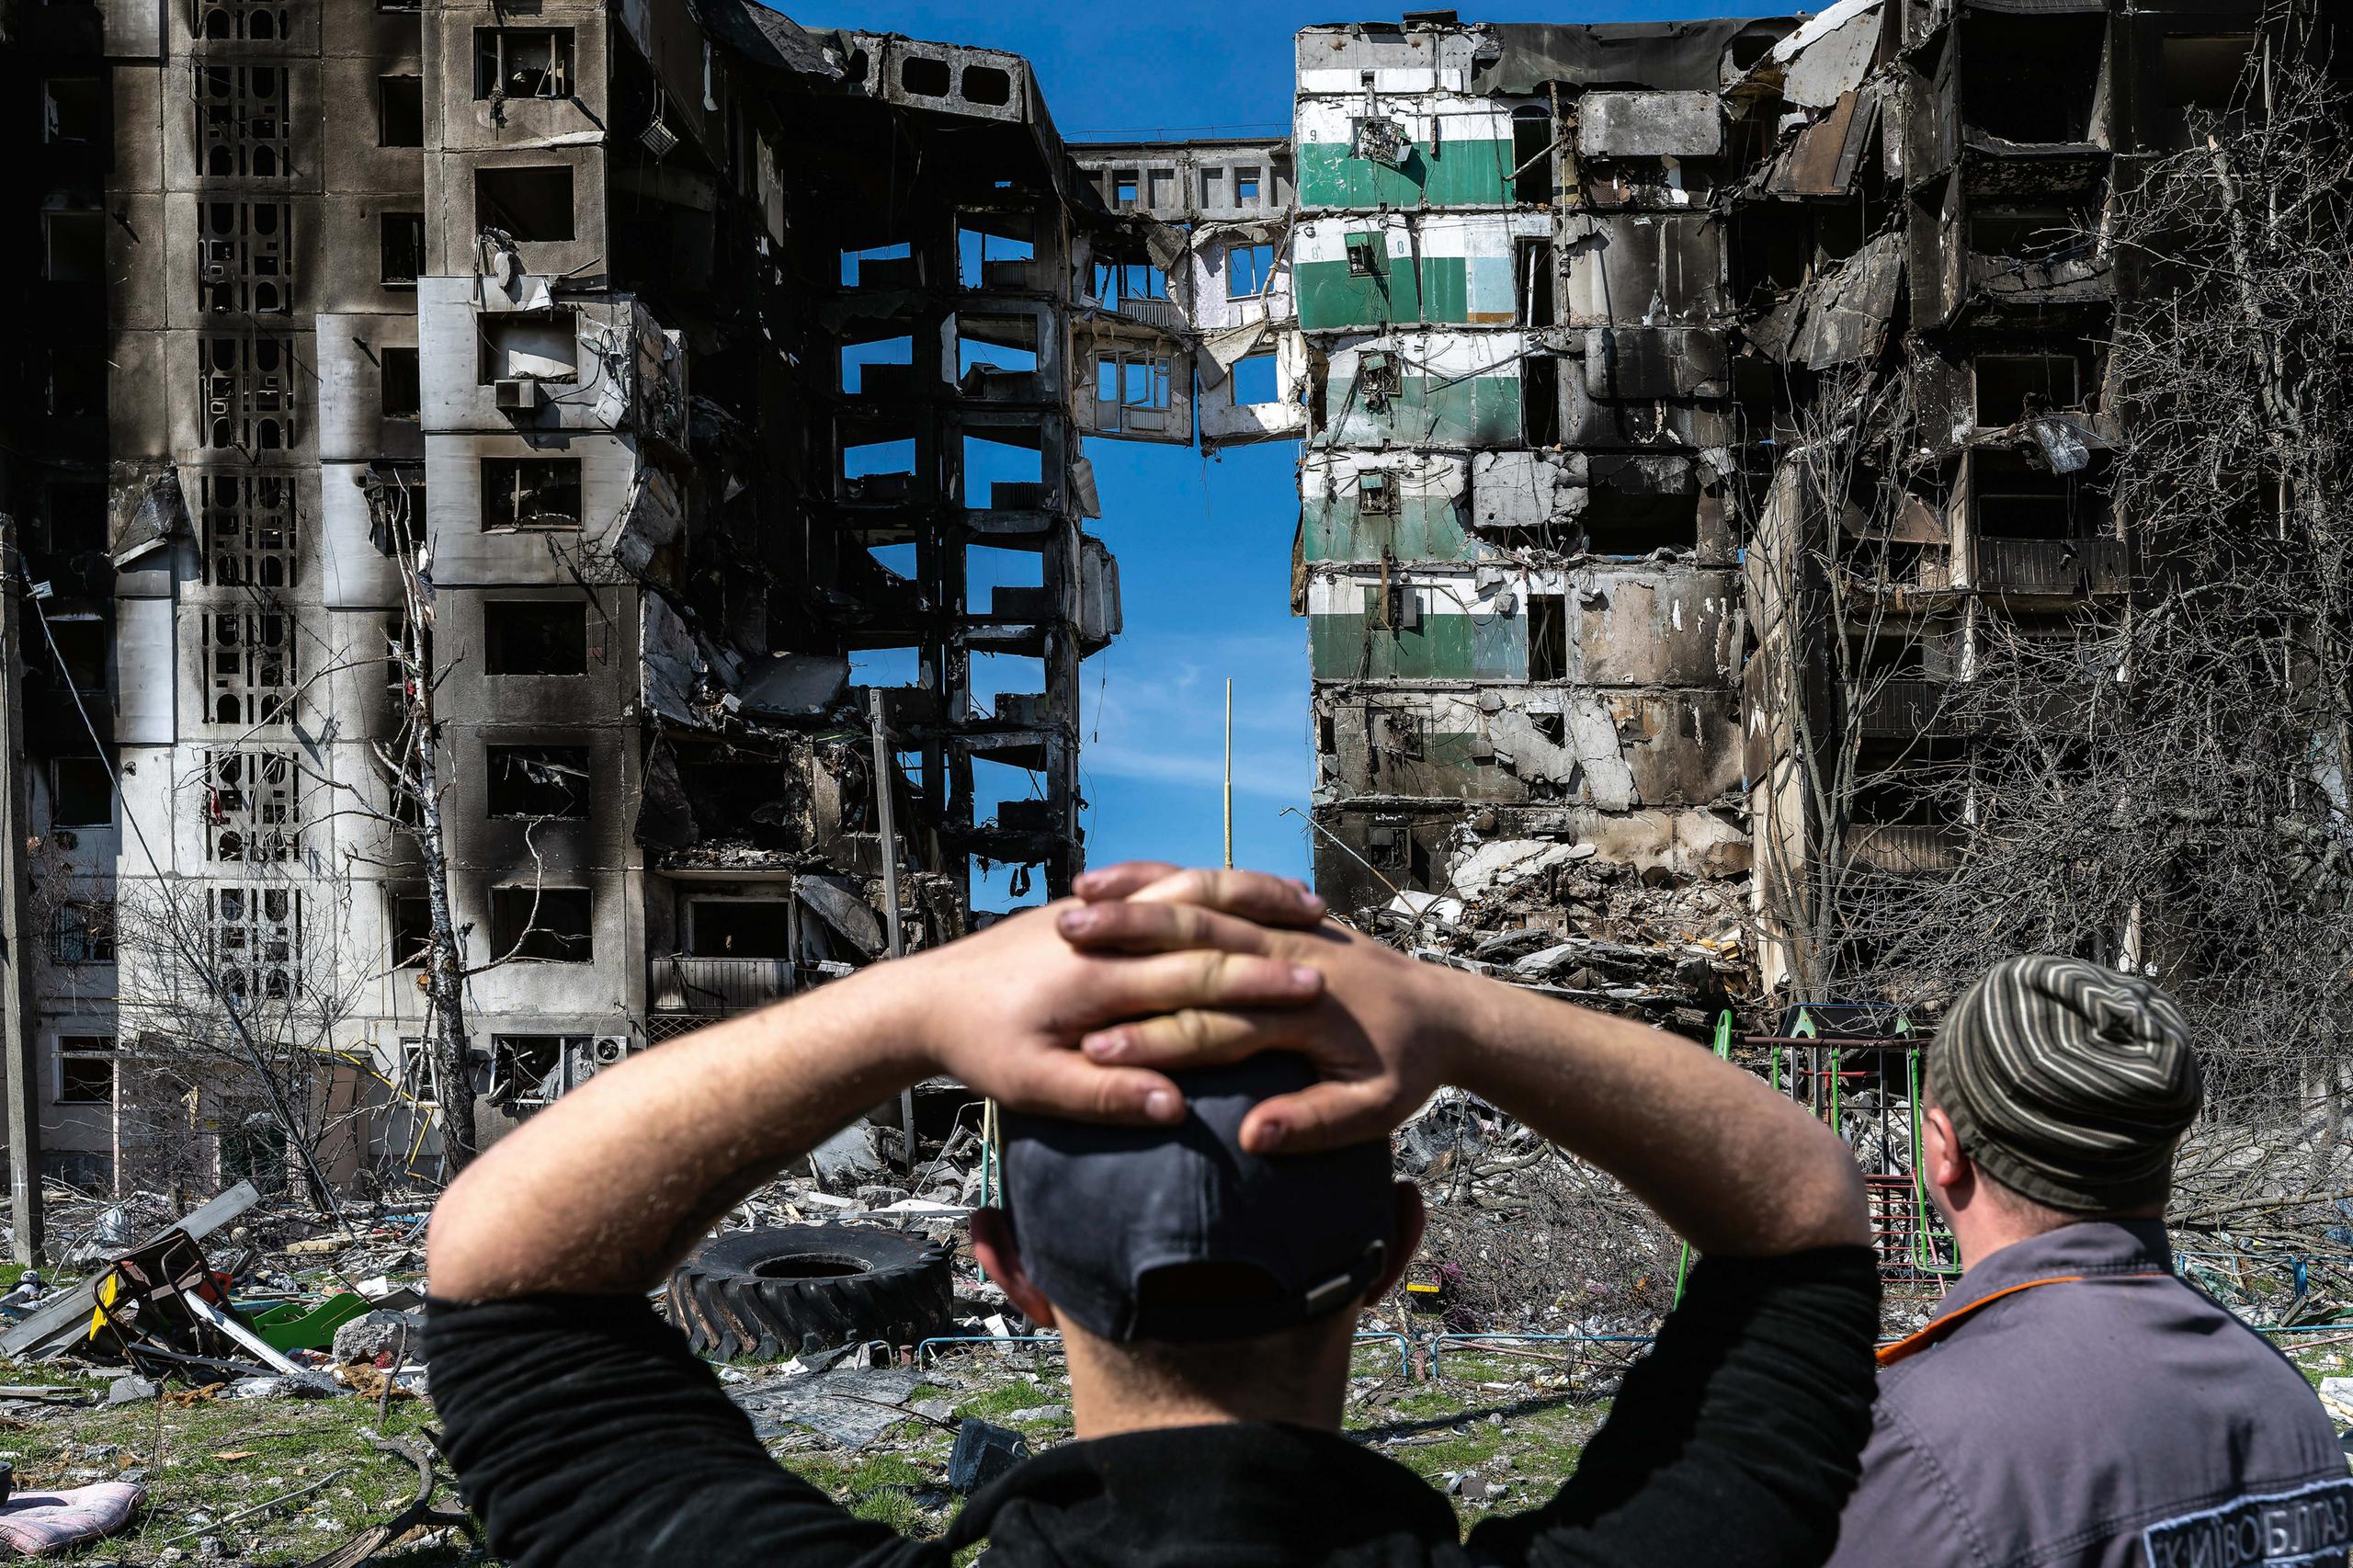 Image of onlookers of destroyed buildings in Ukraine